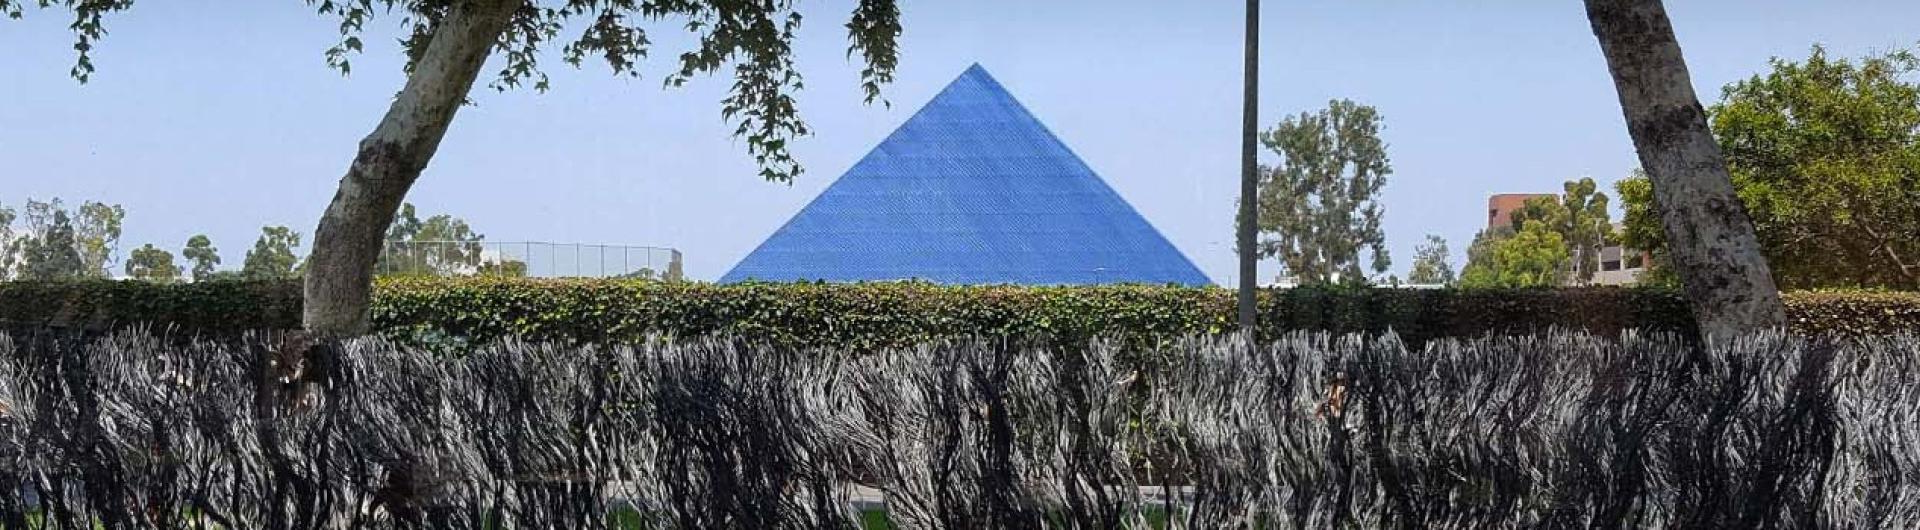 从远处看沃尔特金字塔